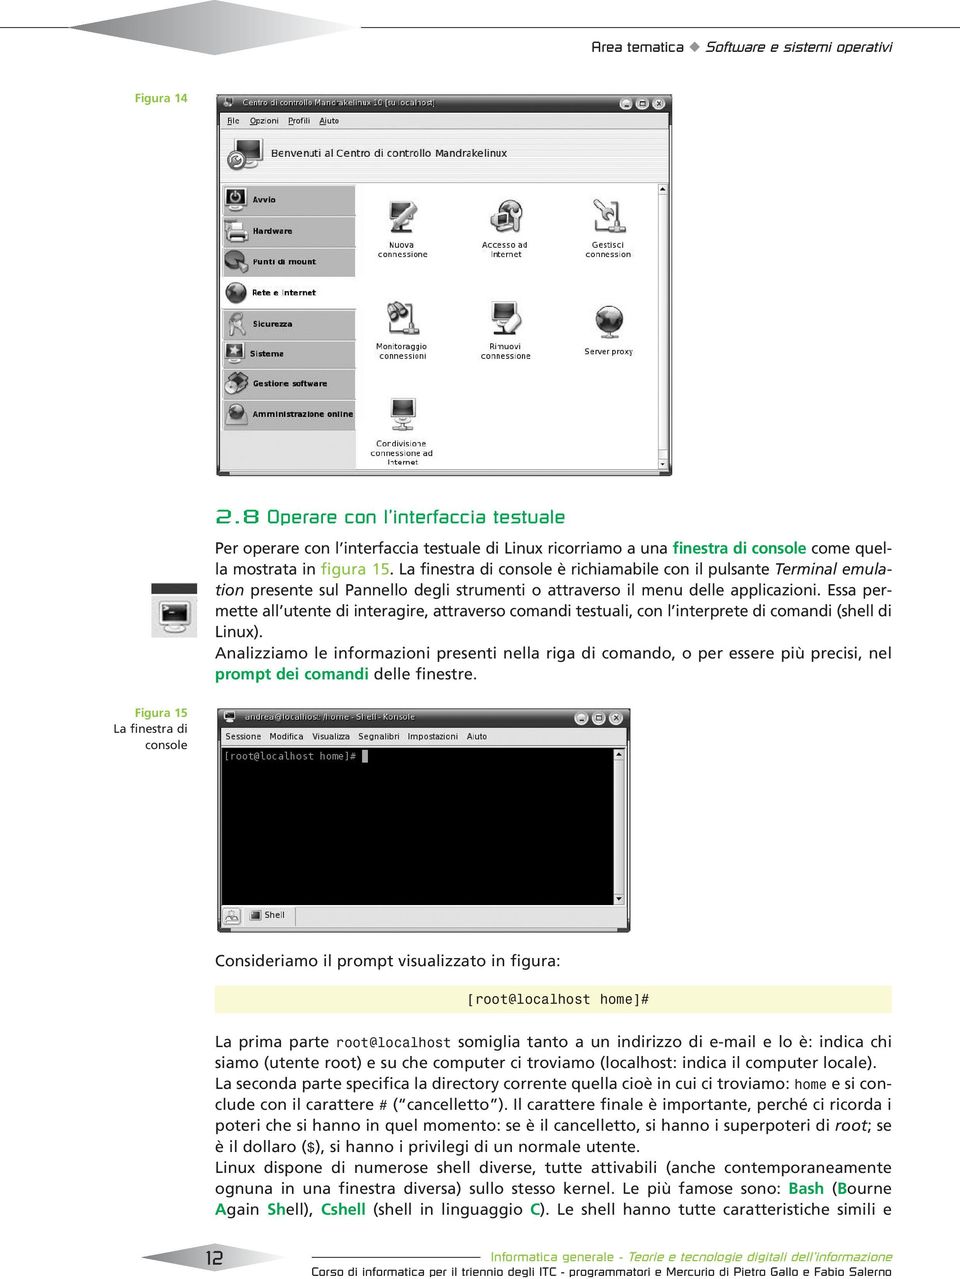 La finestra di console è richiamabile con il pulsante Terminal emulation presente sul Pannello degli strumenti o attraverso il menu delle applicazioni.